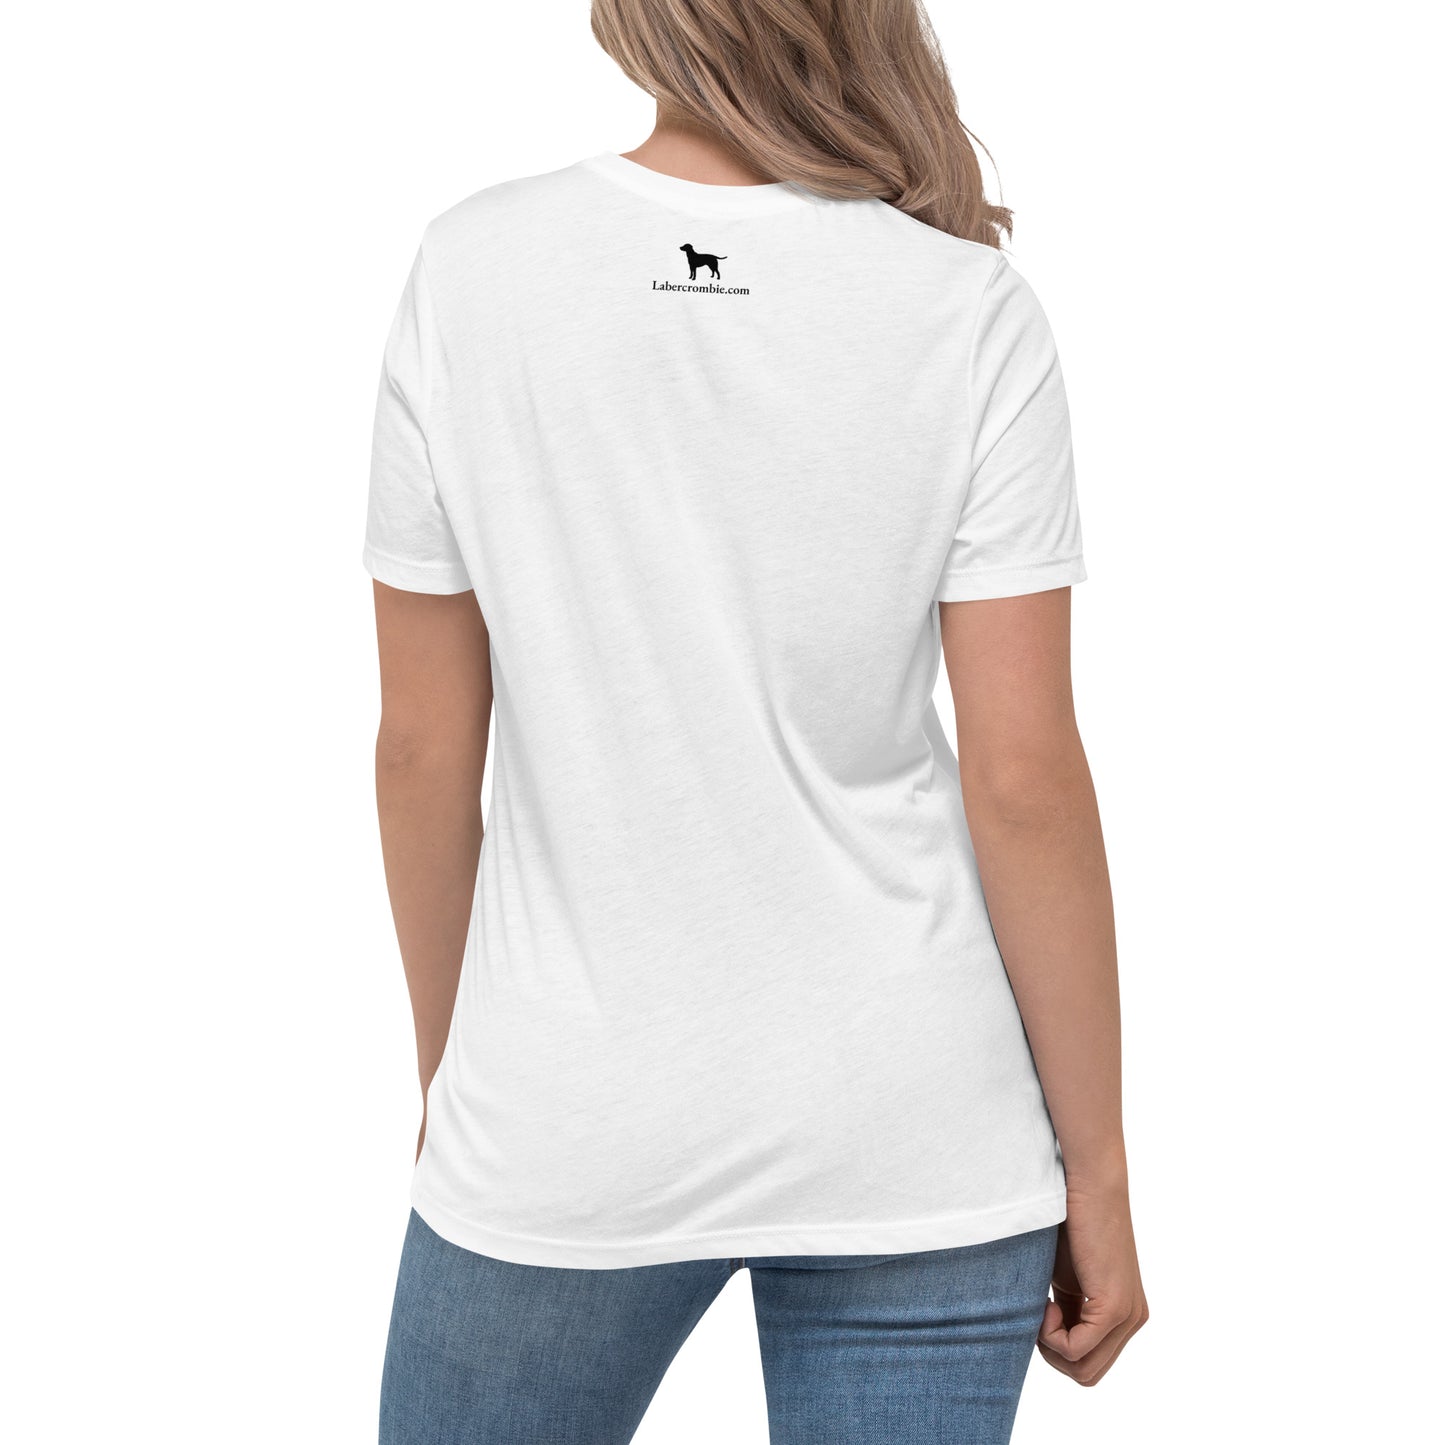 Starbarks Women's Relaxed T-Shirt